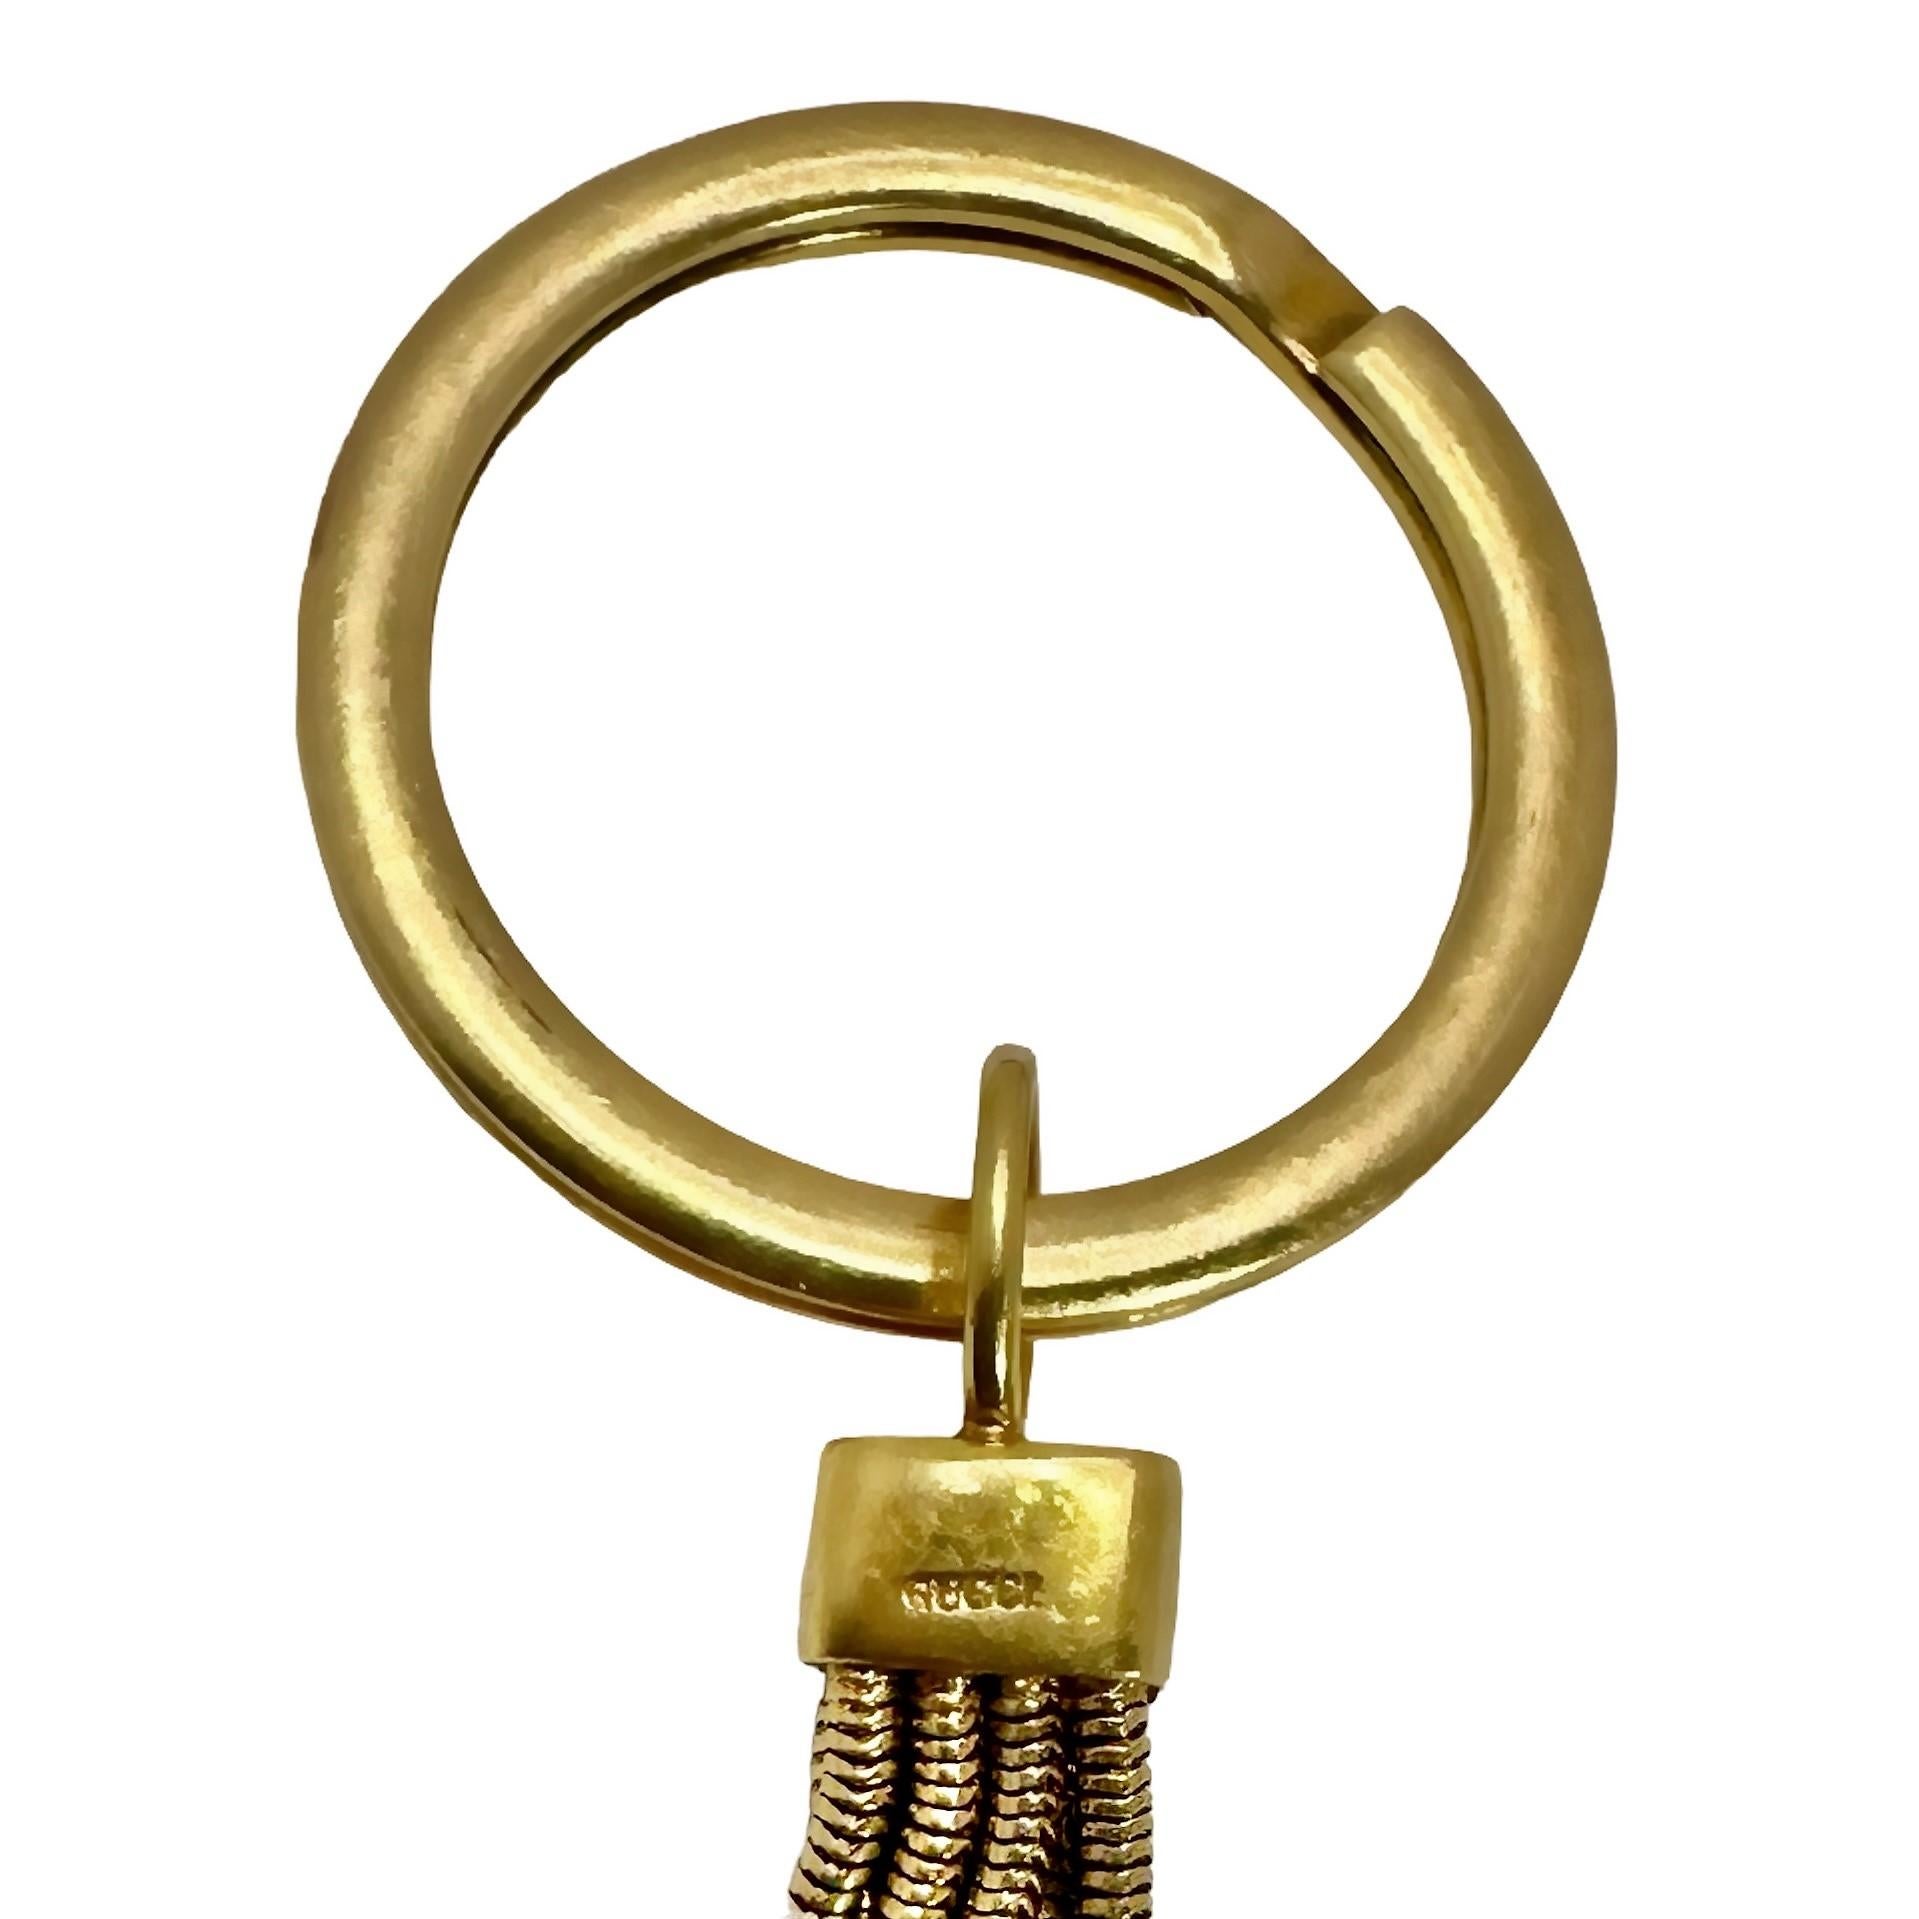 Ce porte-clés imaginatif de Gucci, datant du milieu du 20e siècle, se compose d'un gros anneau en or auquel est suspendue une chaîne ronde à maillons de cobra qui tient un grand cœur en cristal de roche naturel, dépoli, au motif reptilien. Le cœur